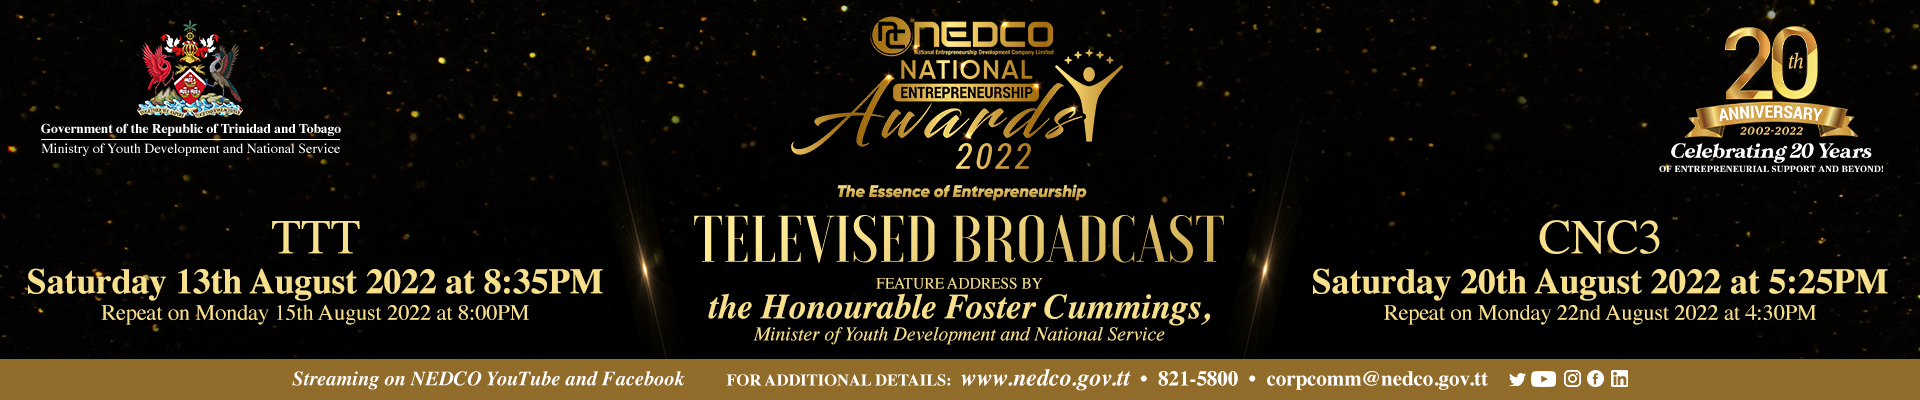 NEDCO National Entrepreneurship Awards